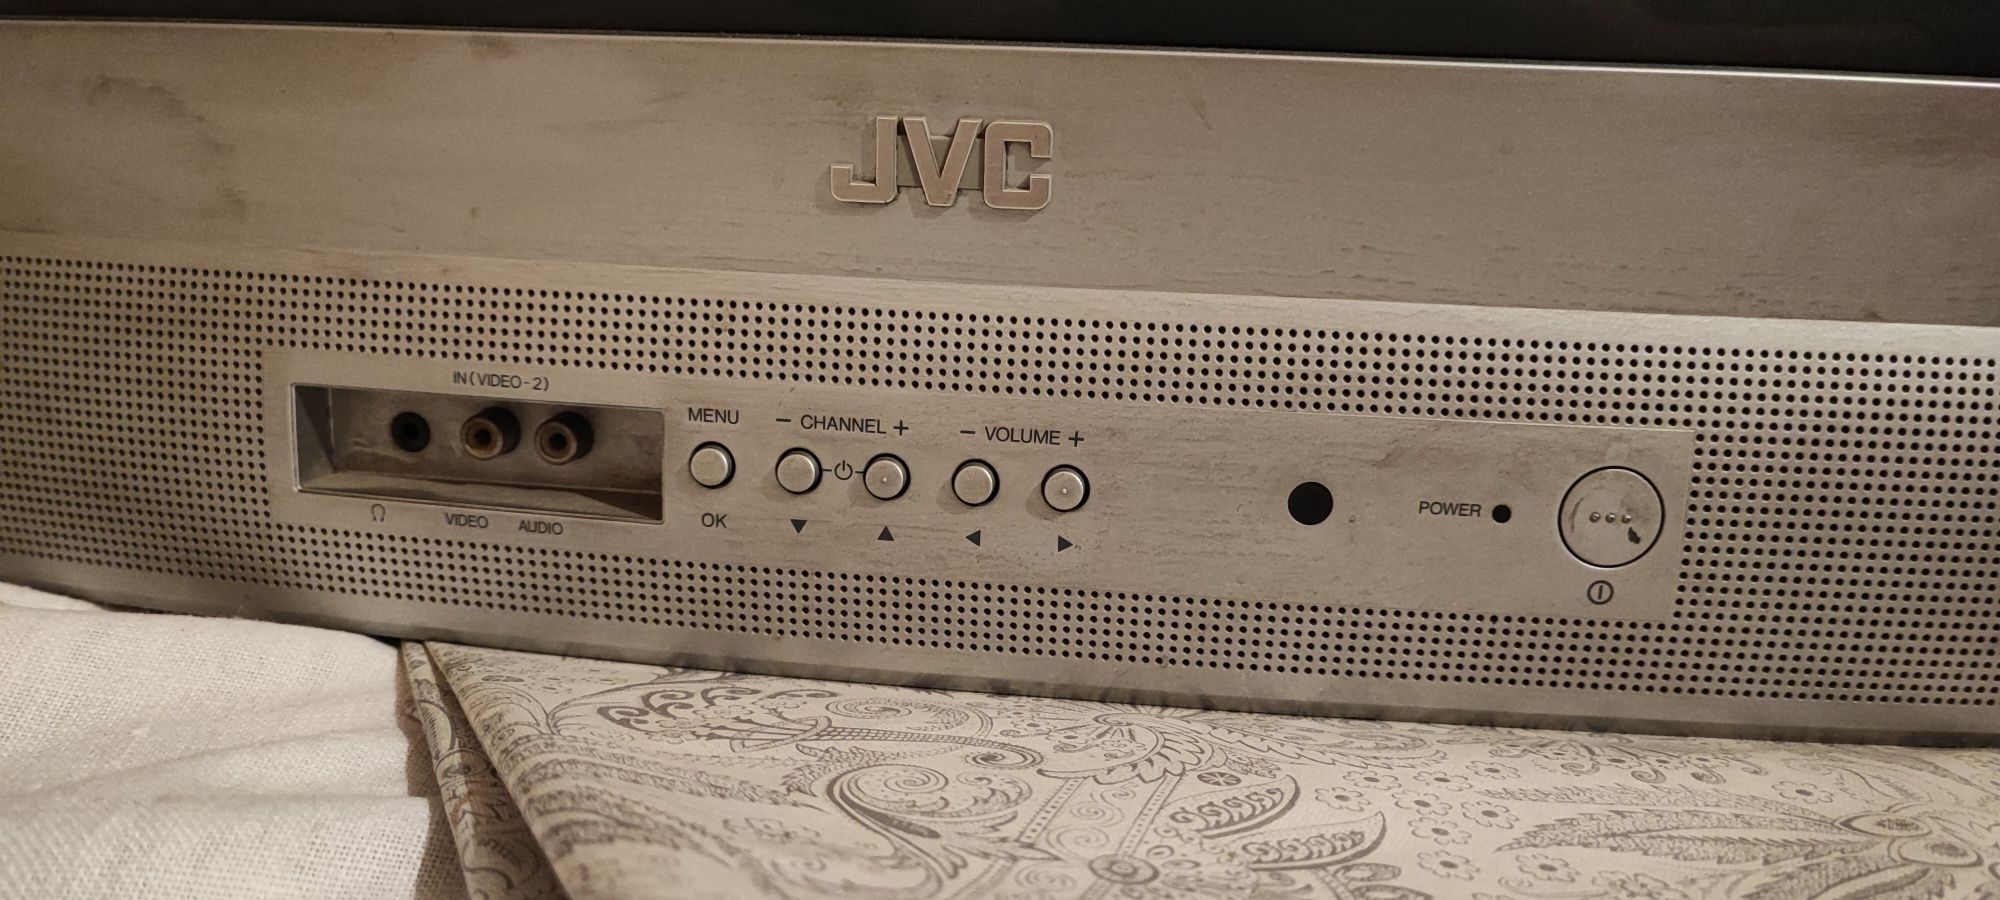 Телевизор JVC для комнаты